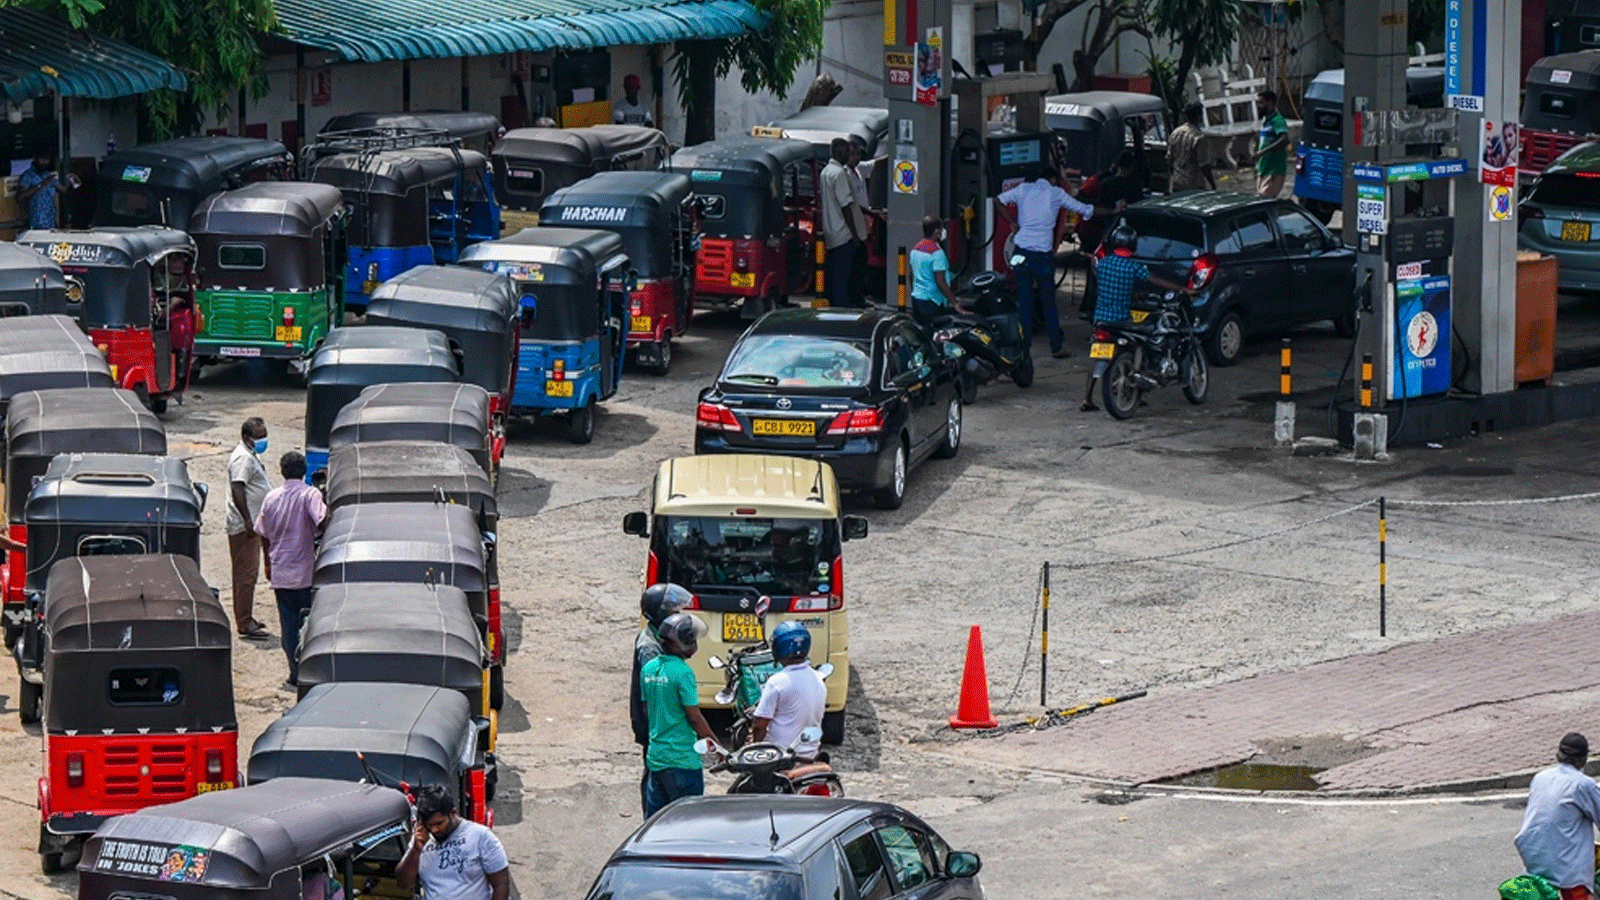 كولومبو: يصطف سائقو السيارات لشراء الوقود في محطة وقود شركة سيلان بتروليوم كوربوريشن في كولومبو في 2 أيار\مايو 2022.